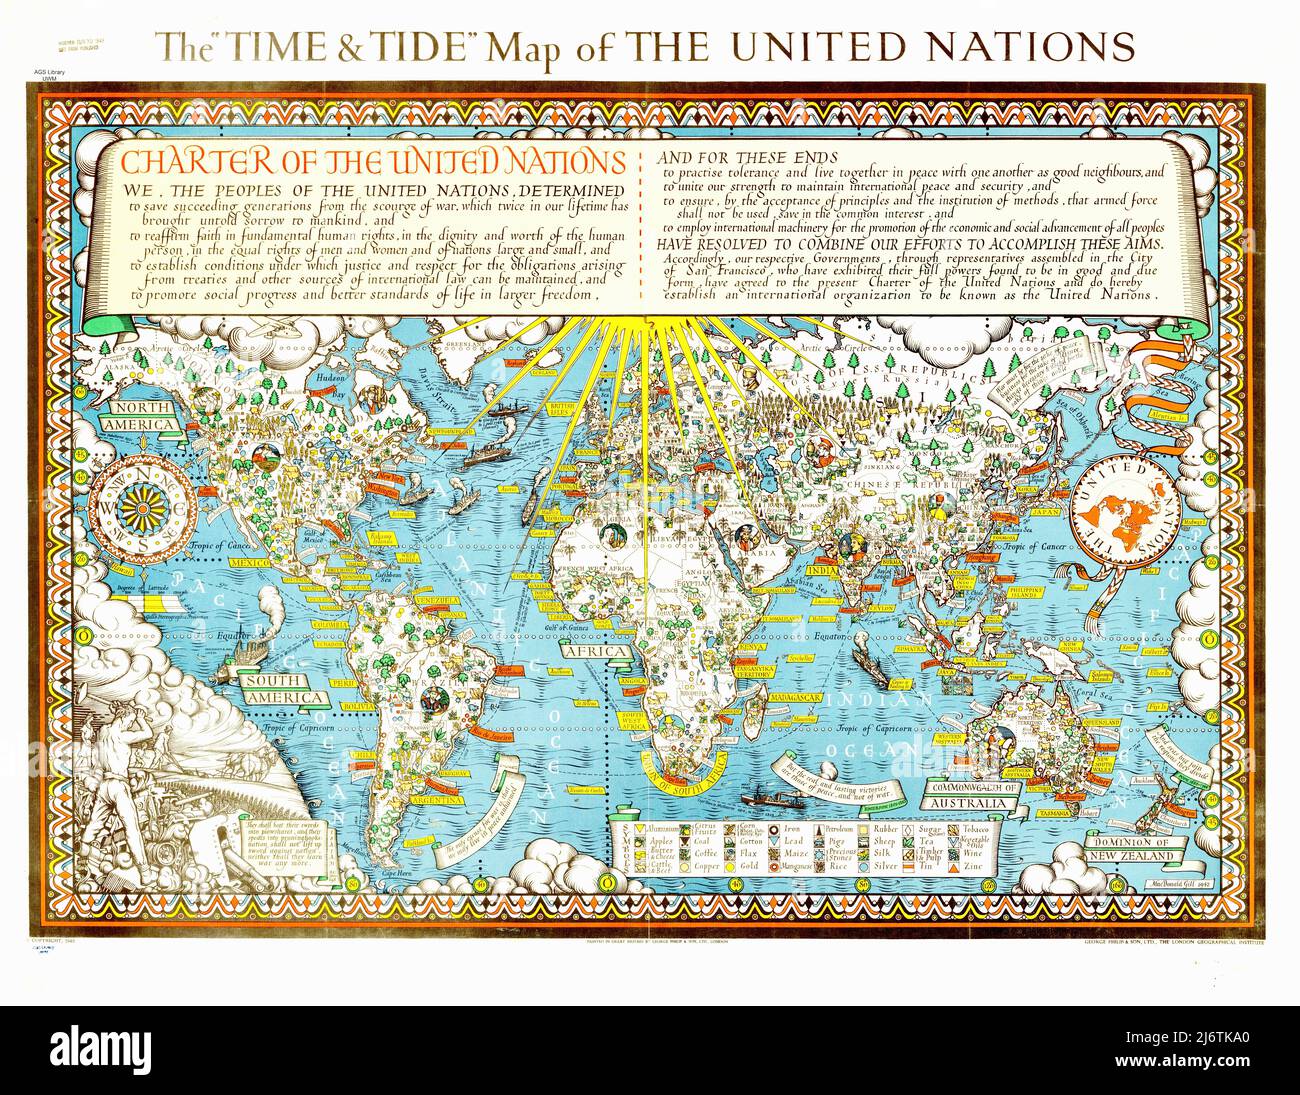 La carte du temps et des marées des Nations Unies Banque D'Images